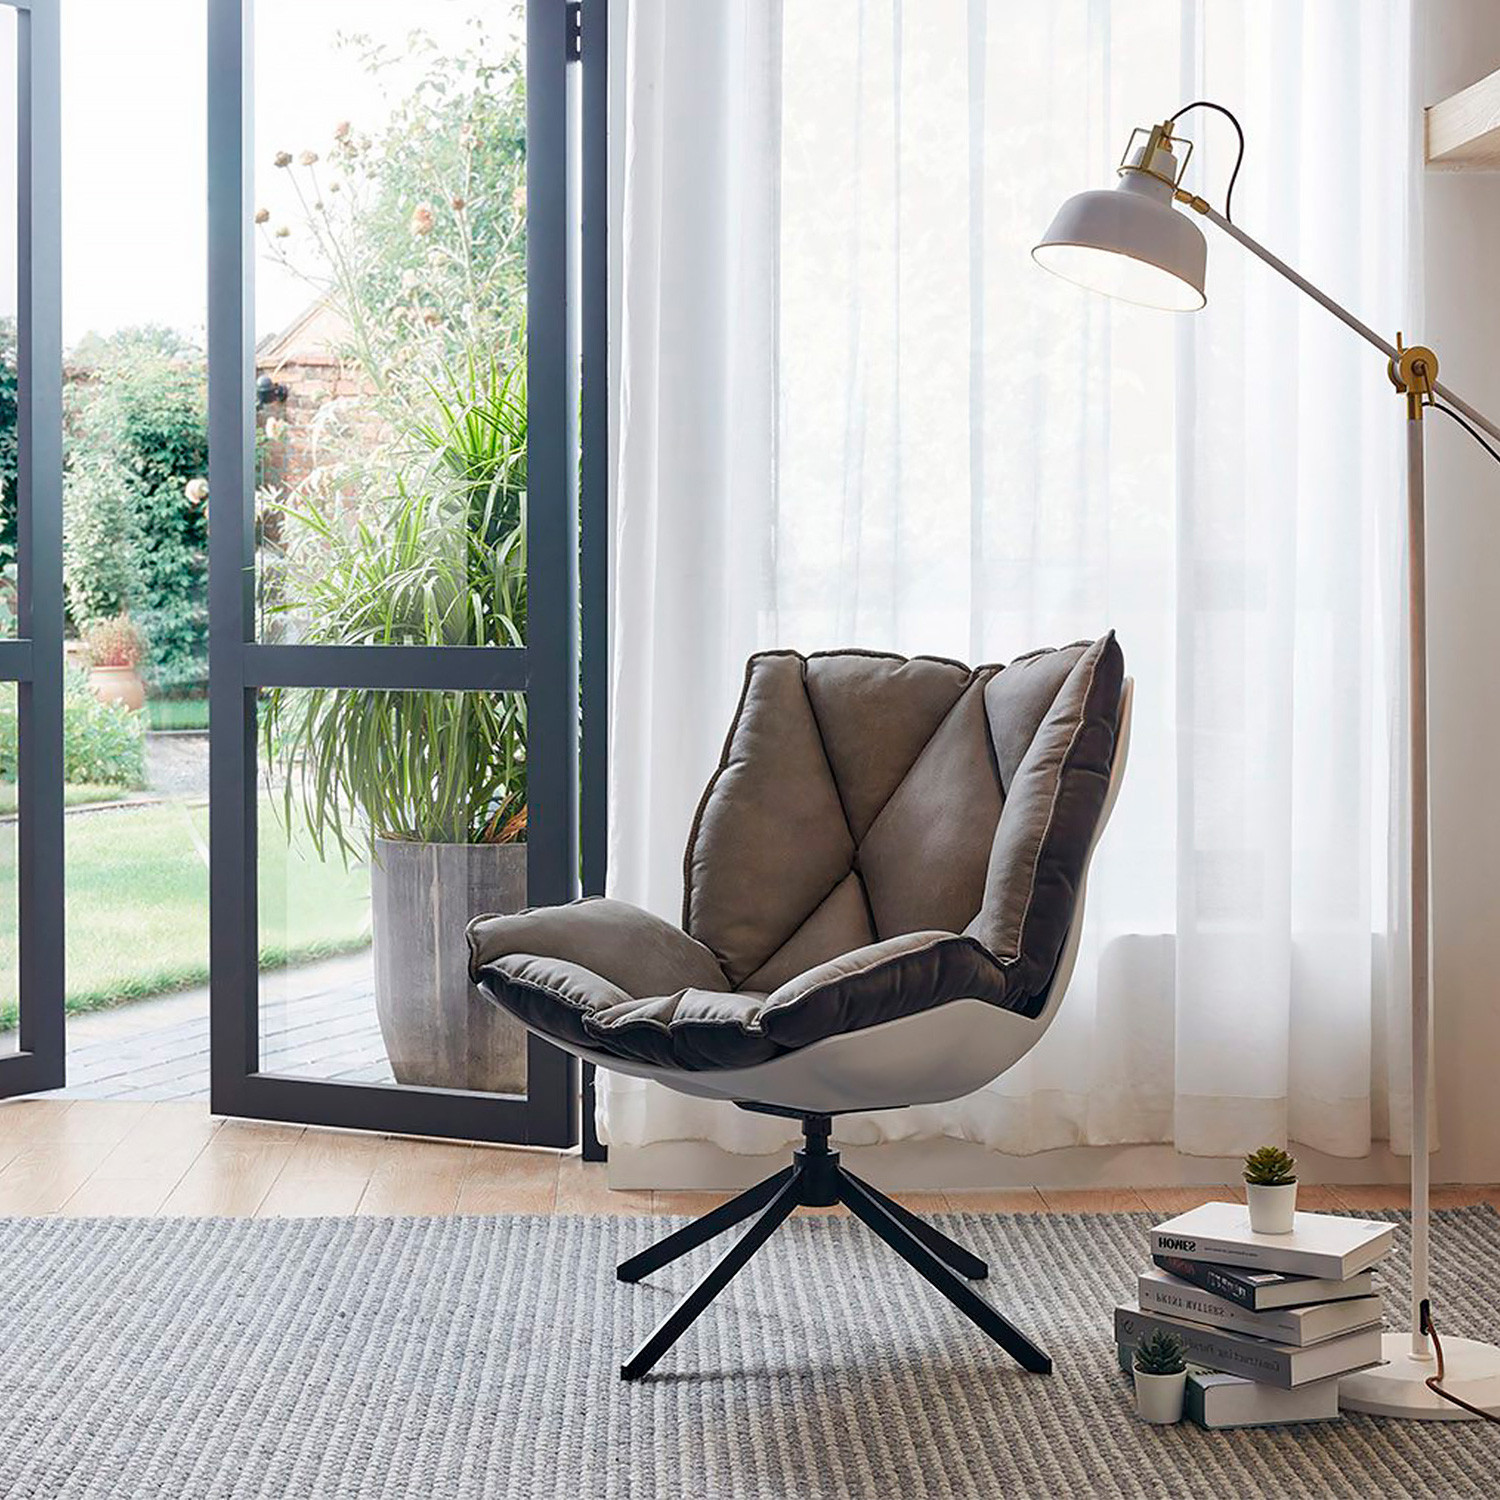 Лаунж кресла DC-1565D серый / чёрный фото 1 — New Style of Furniture